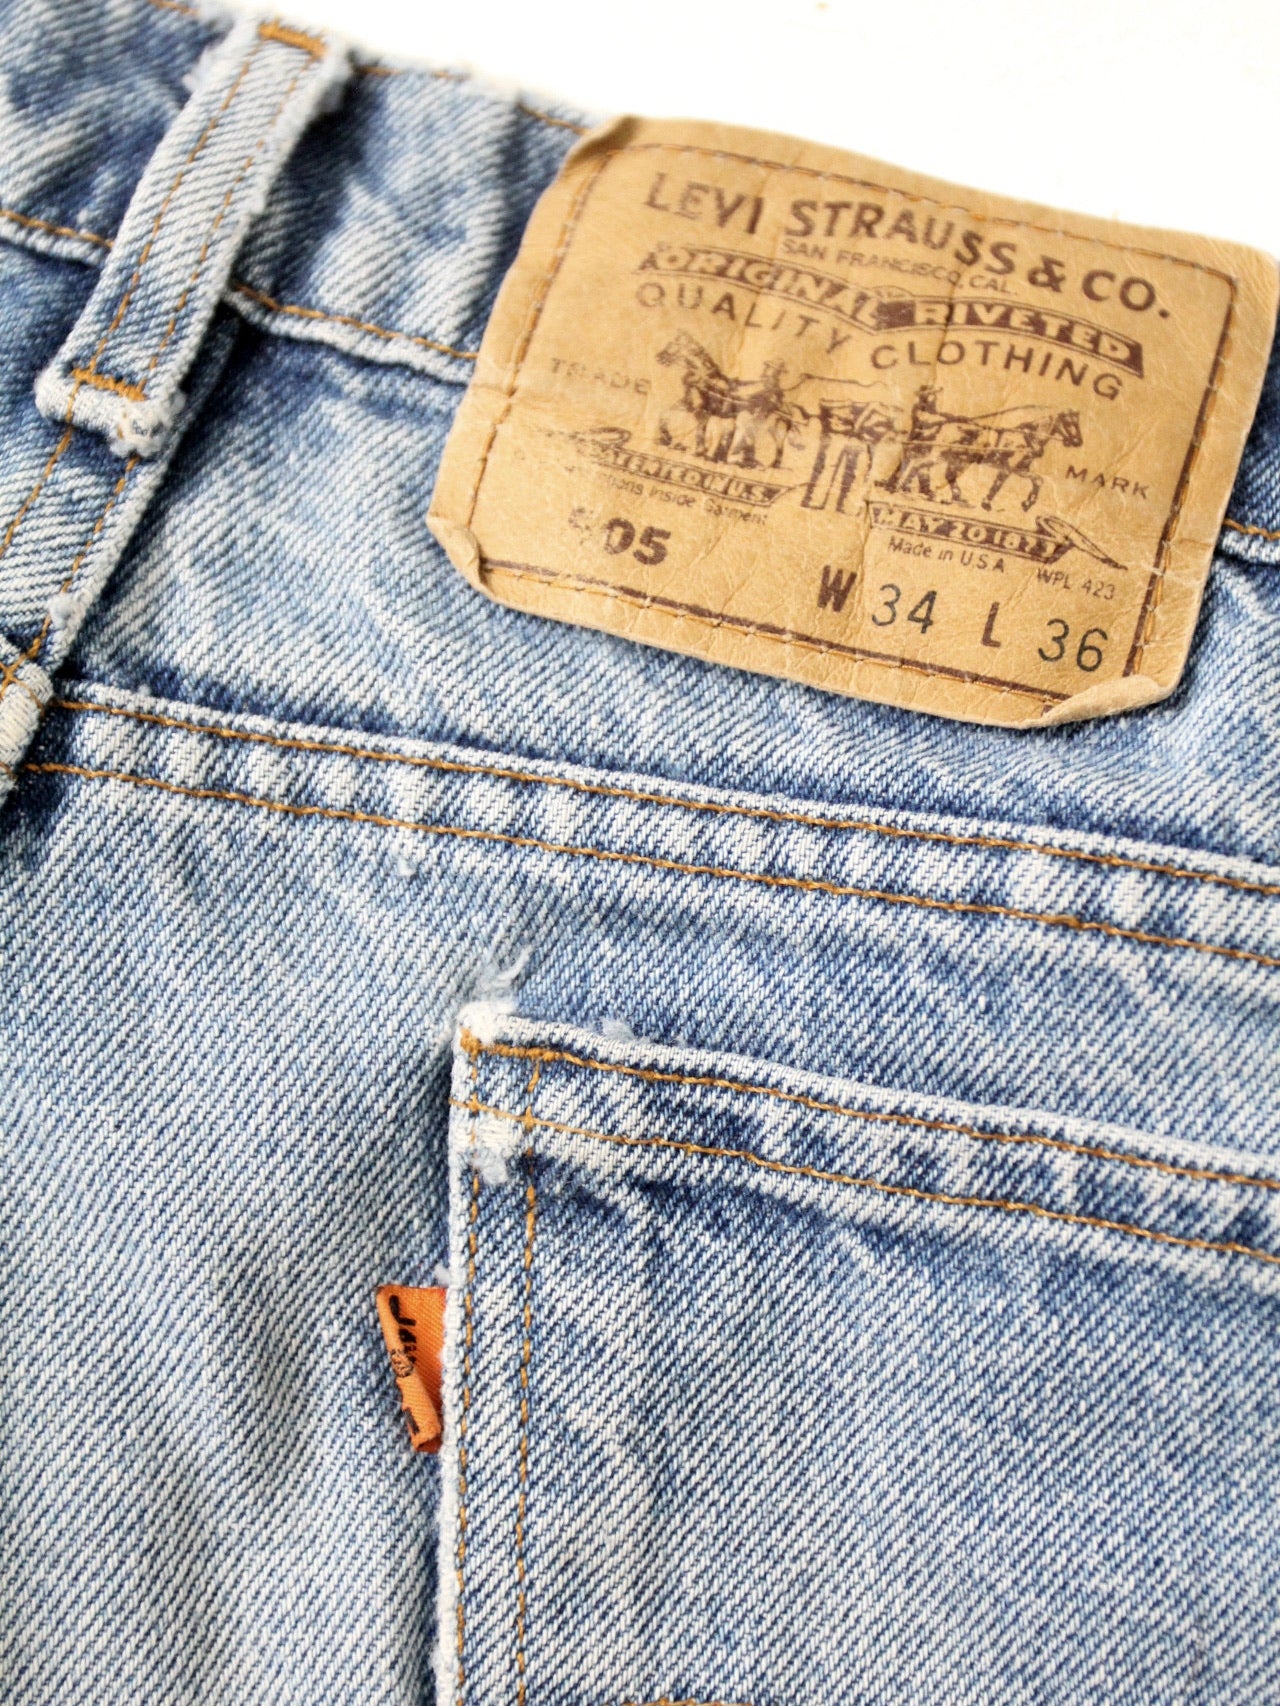 vintage 70s Levis 505 denim jeans ⎟ 33 x 31 – 86 Vintage